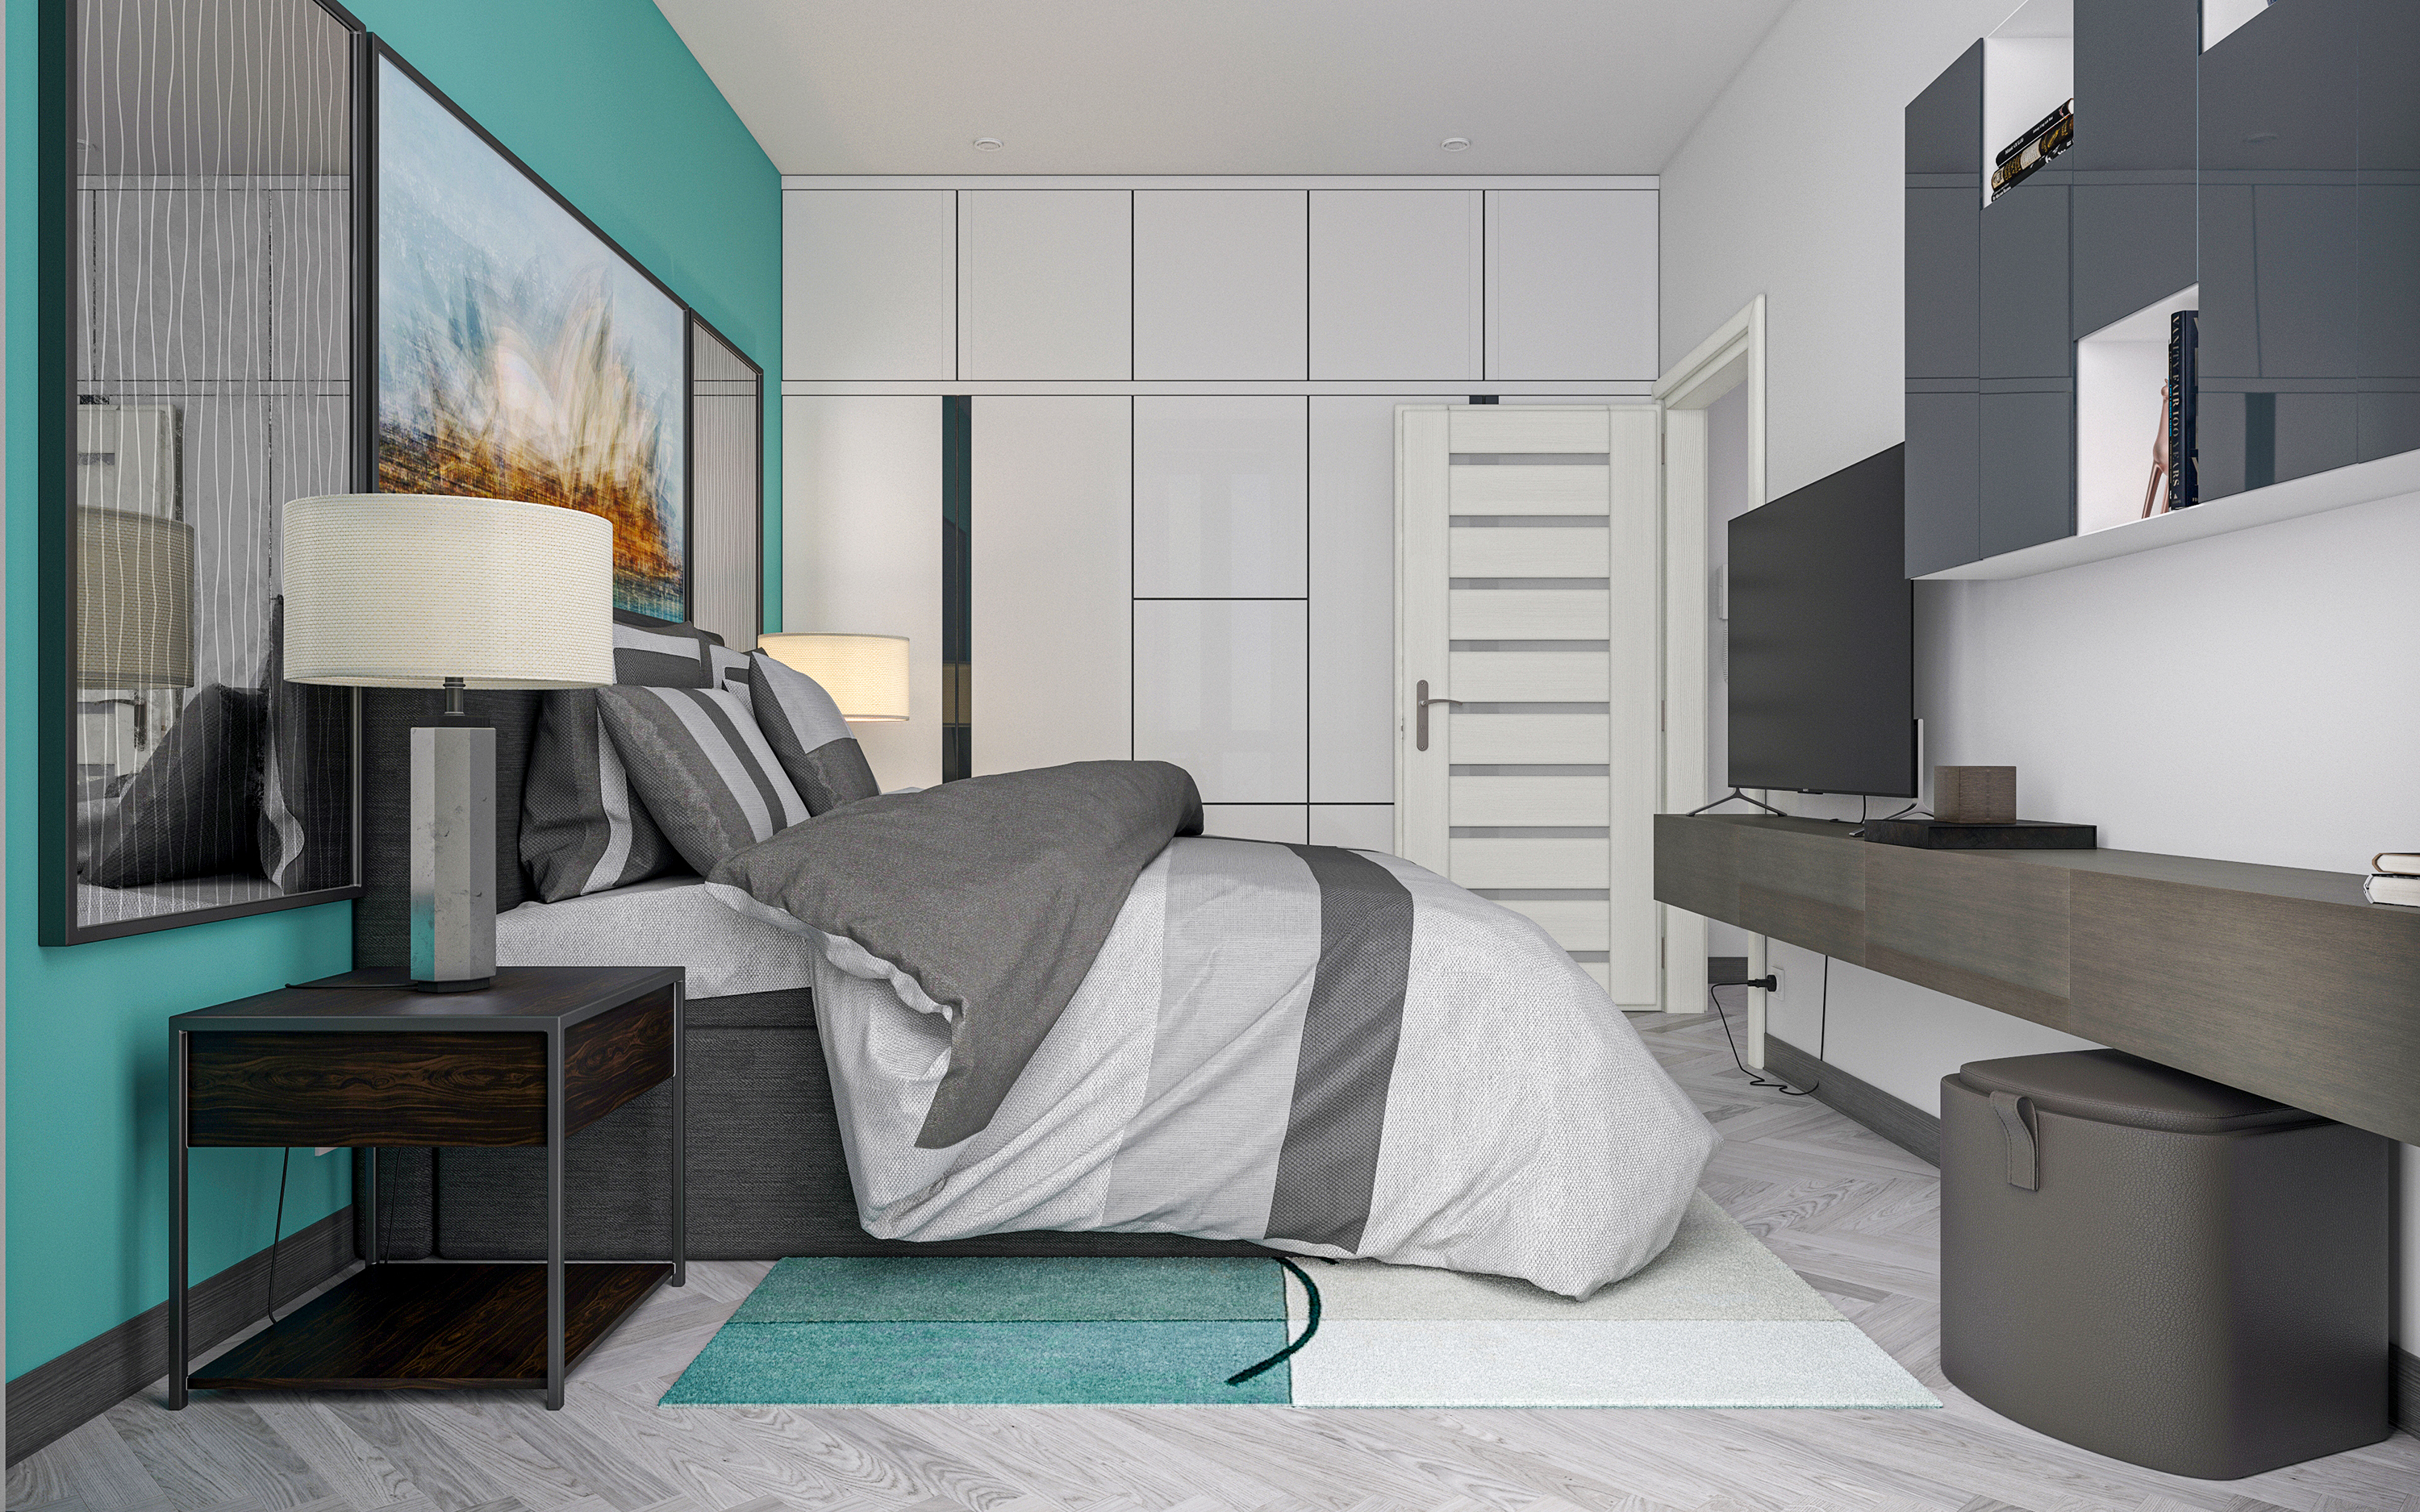 Appartement une chambre S66 dans 3d max corona render image